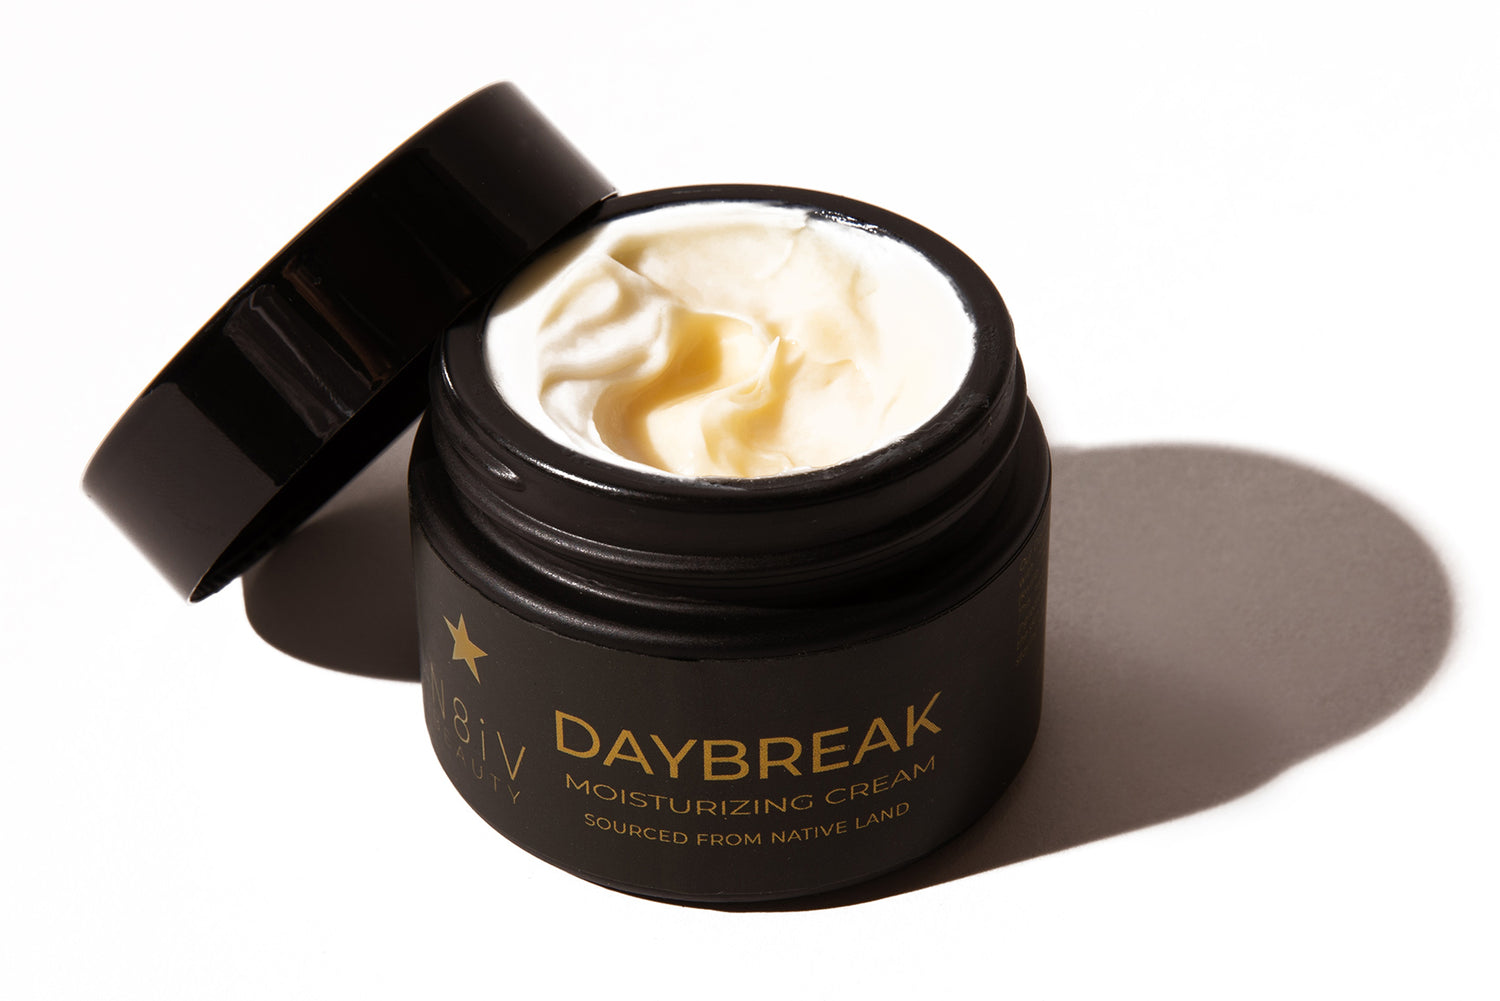 Daybreak Moisturizing Cream